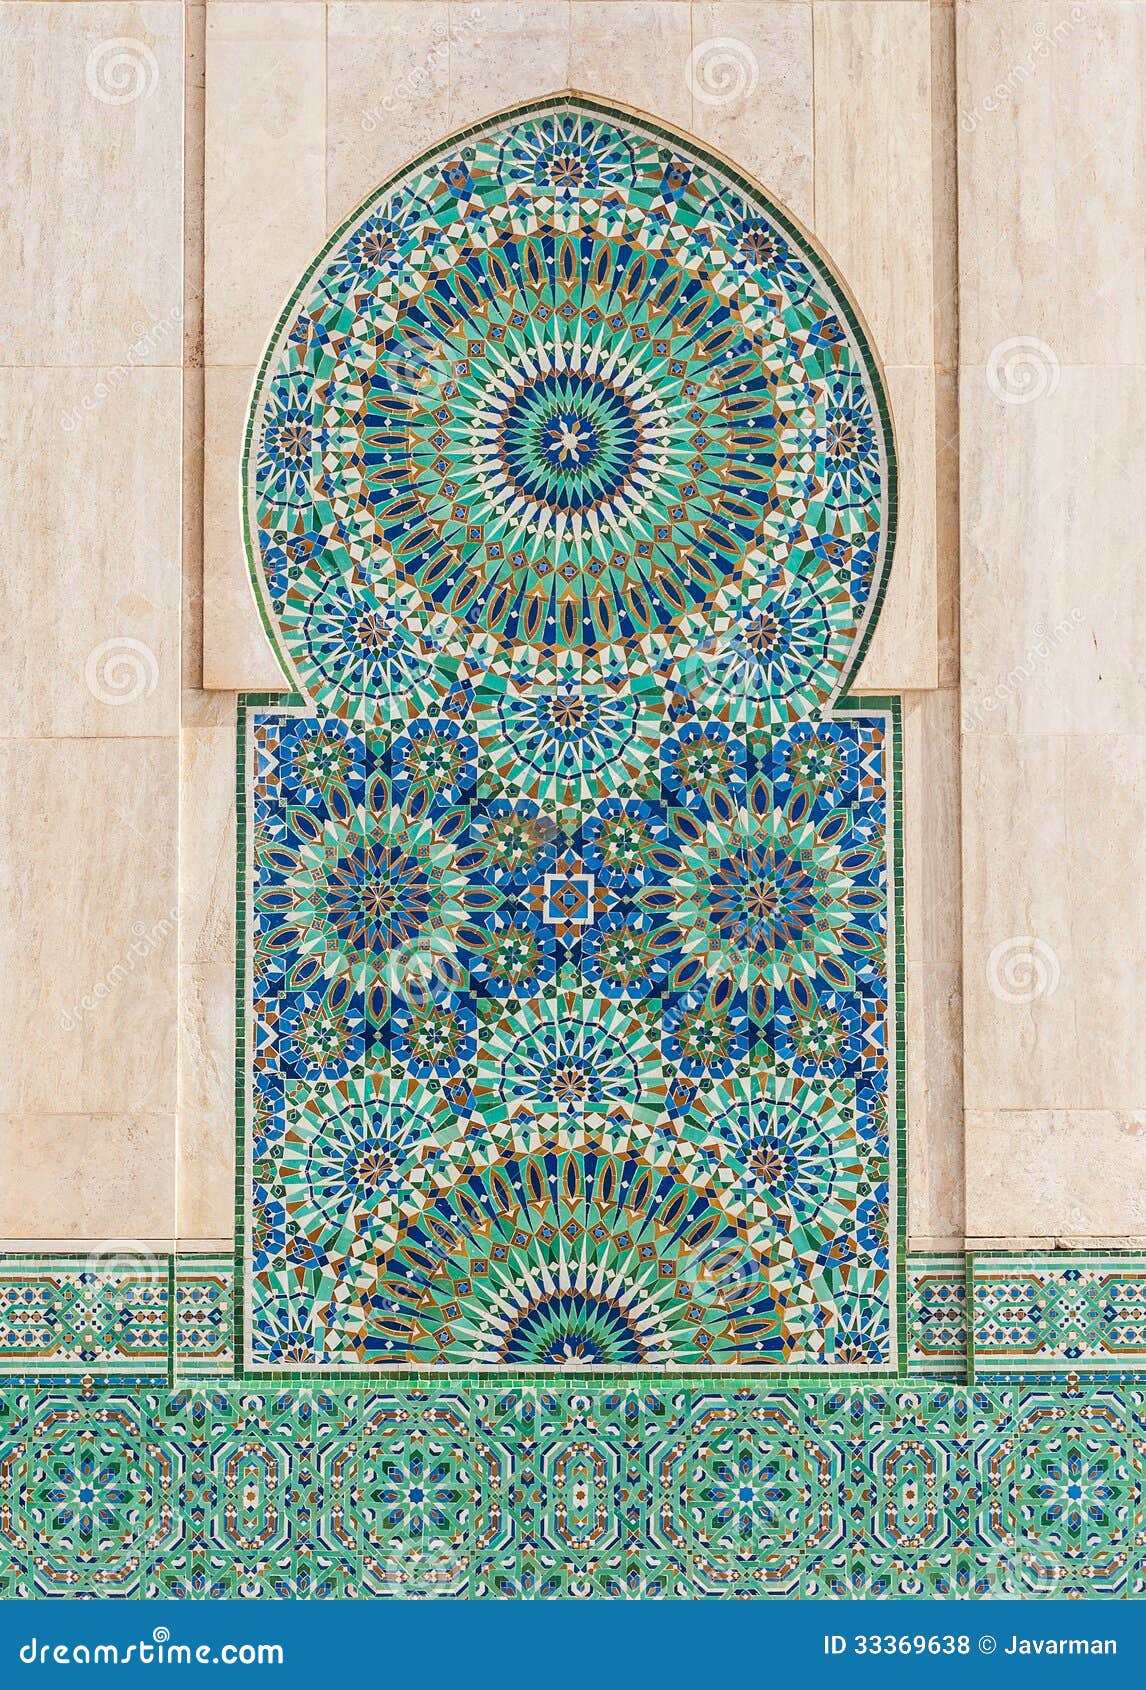 Nền gạch lát cổ điển Marocco sẽ làm cho không gian sống của bạn trở nên đặc biệt và lạ mắt hơn. Với những hoa văn độc đáo, màu sắc rực rỡ, nền gạch lát này sẽ tạo nên một không gian sống độc đáo và tinh tế. Hãy khám phá hình ảnh liên quan và phát hiện sức hút đặc biệt của nền gạch lát vintage Marocco này.